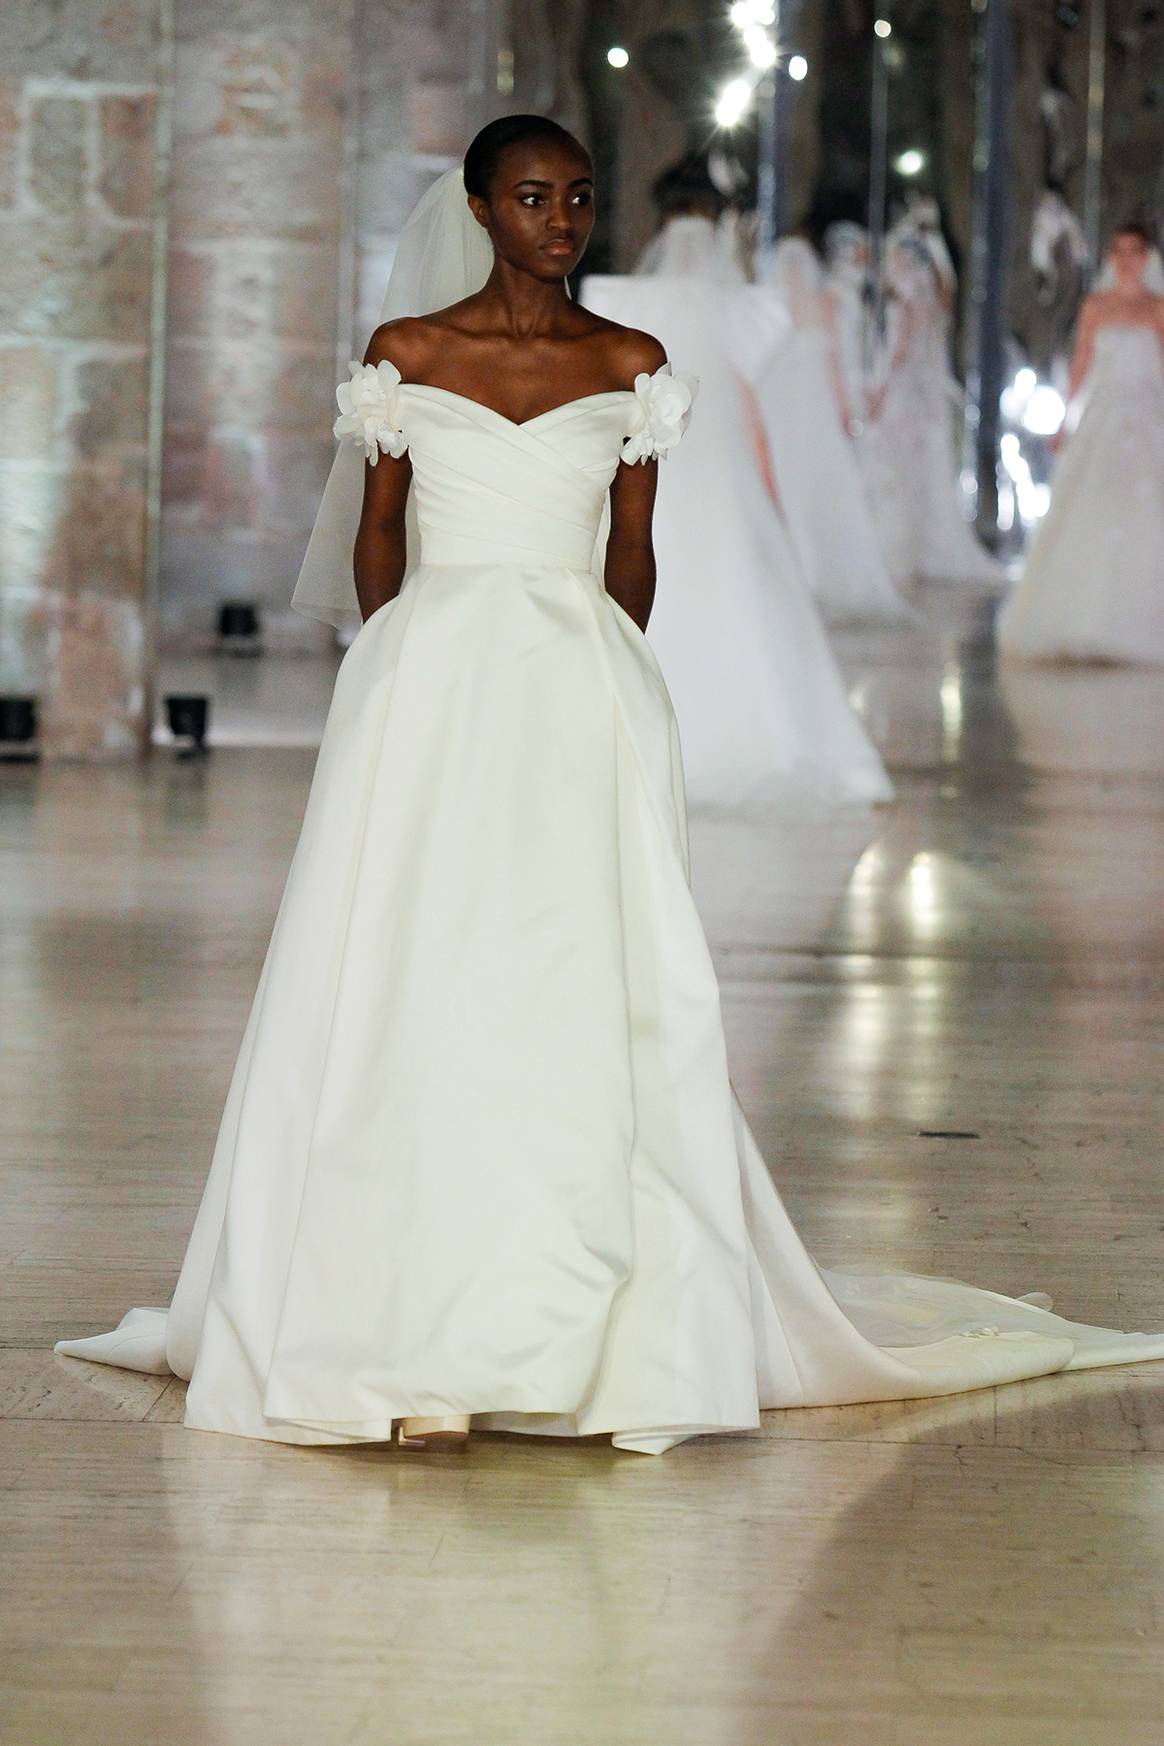 Photo Credits: Desfile de la colección de moda nupcial de Elie Saab “A Sense of Wonder” durante la “Bridal Night” de la Barcelona Bridal Fashion Week. Fotografía de cortesía.